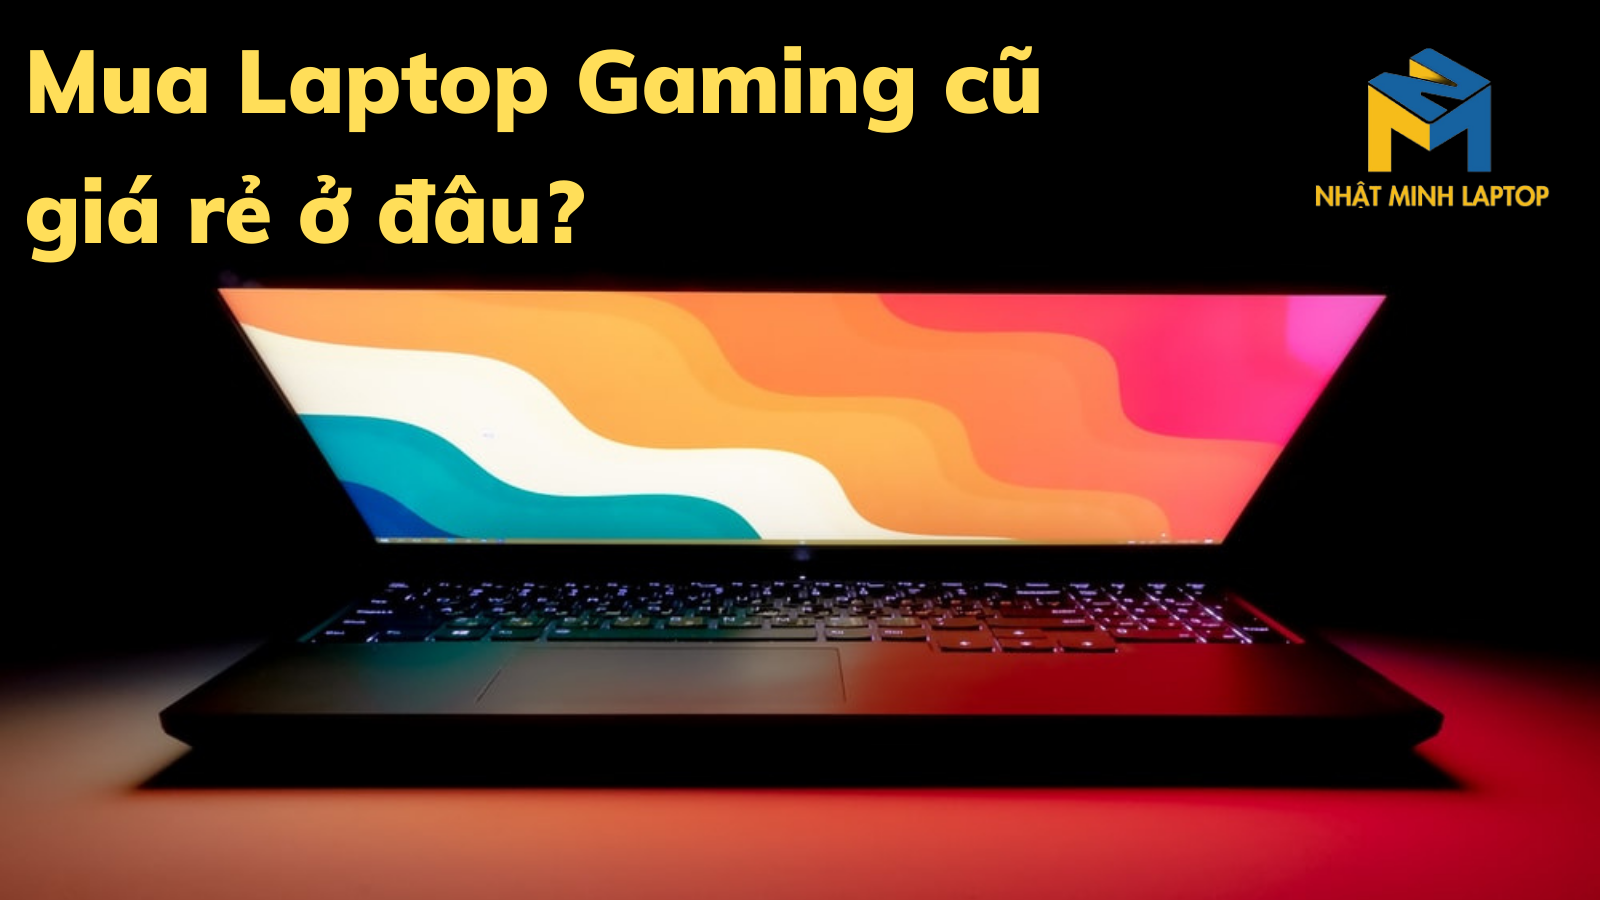 Mua Laptop Gaming cũ giá rẻ chất lượng ở đâu?